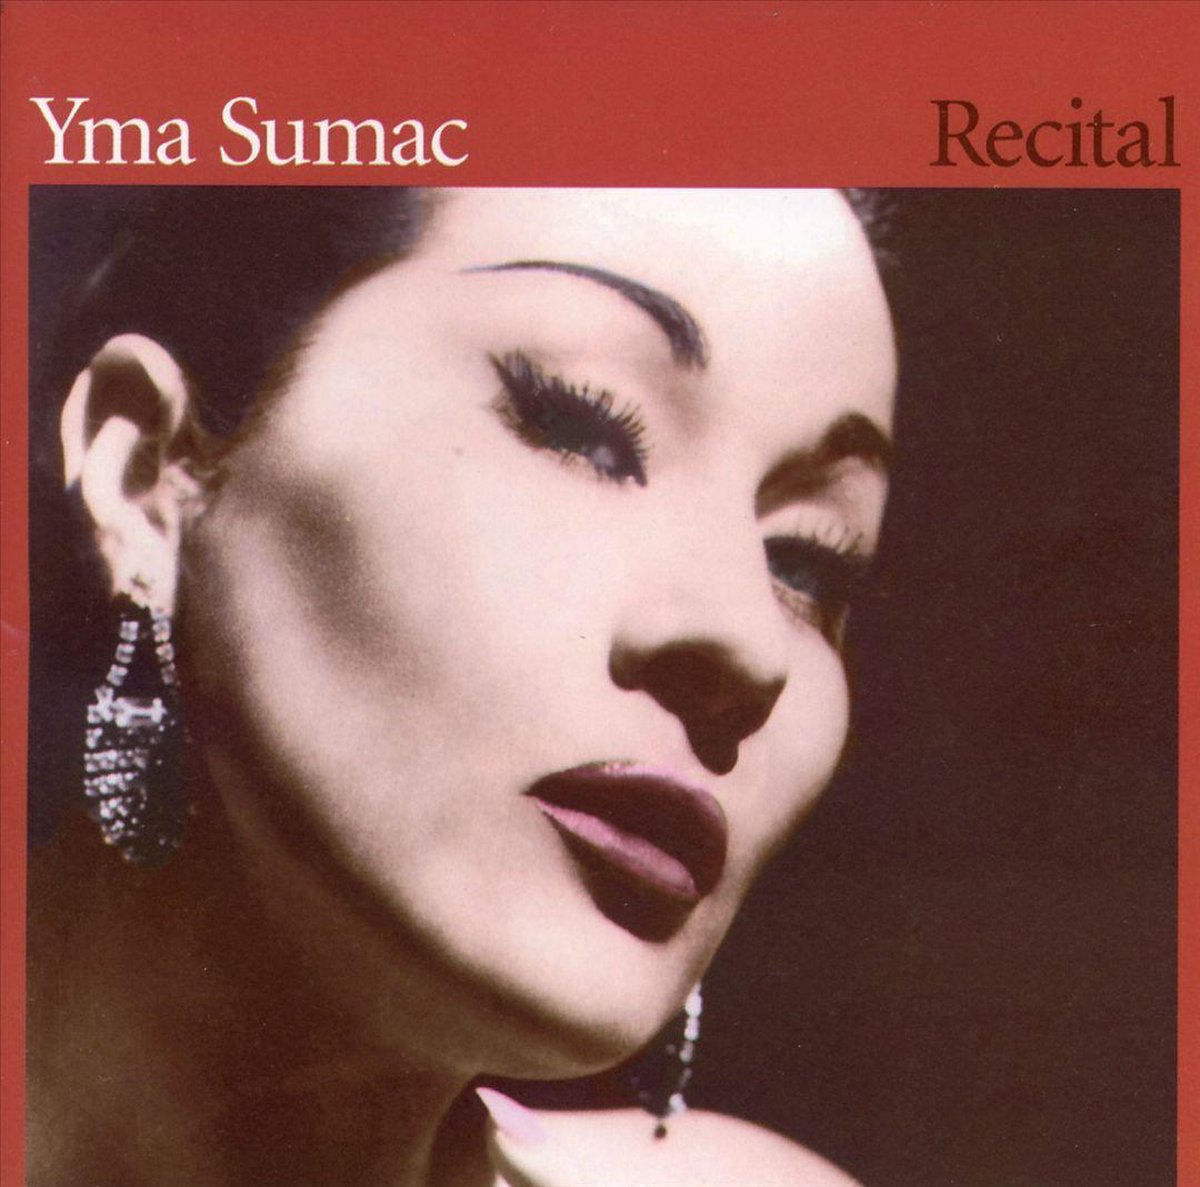 Recital - Yma Sumac